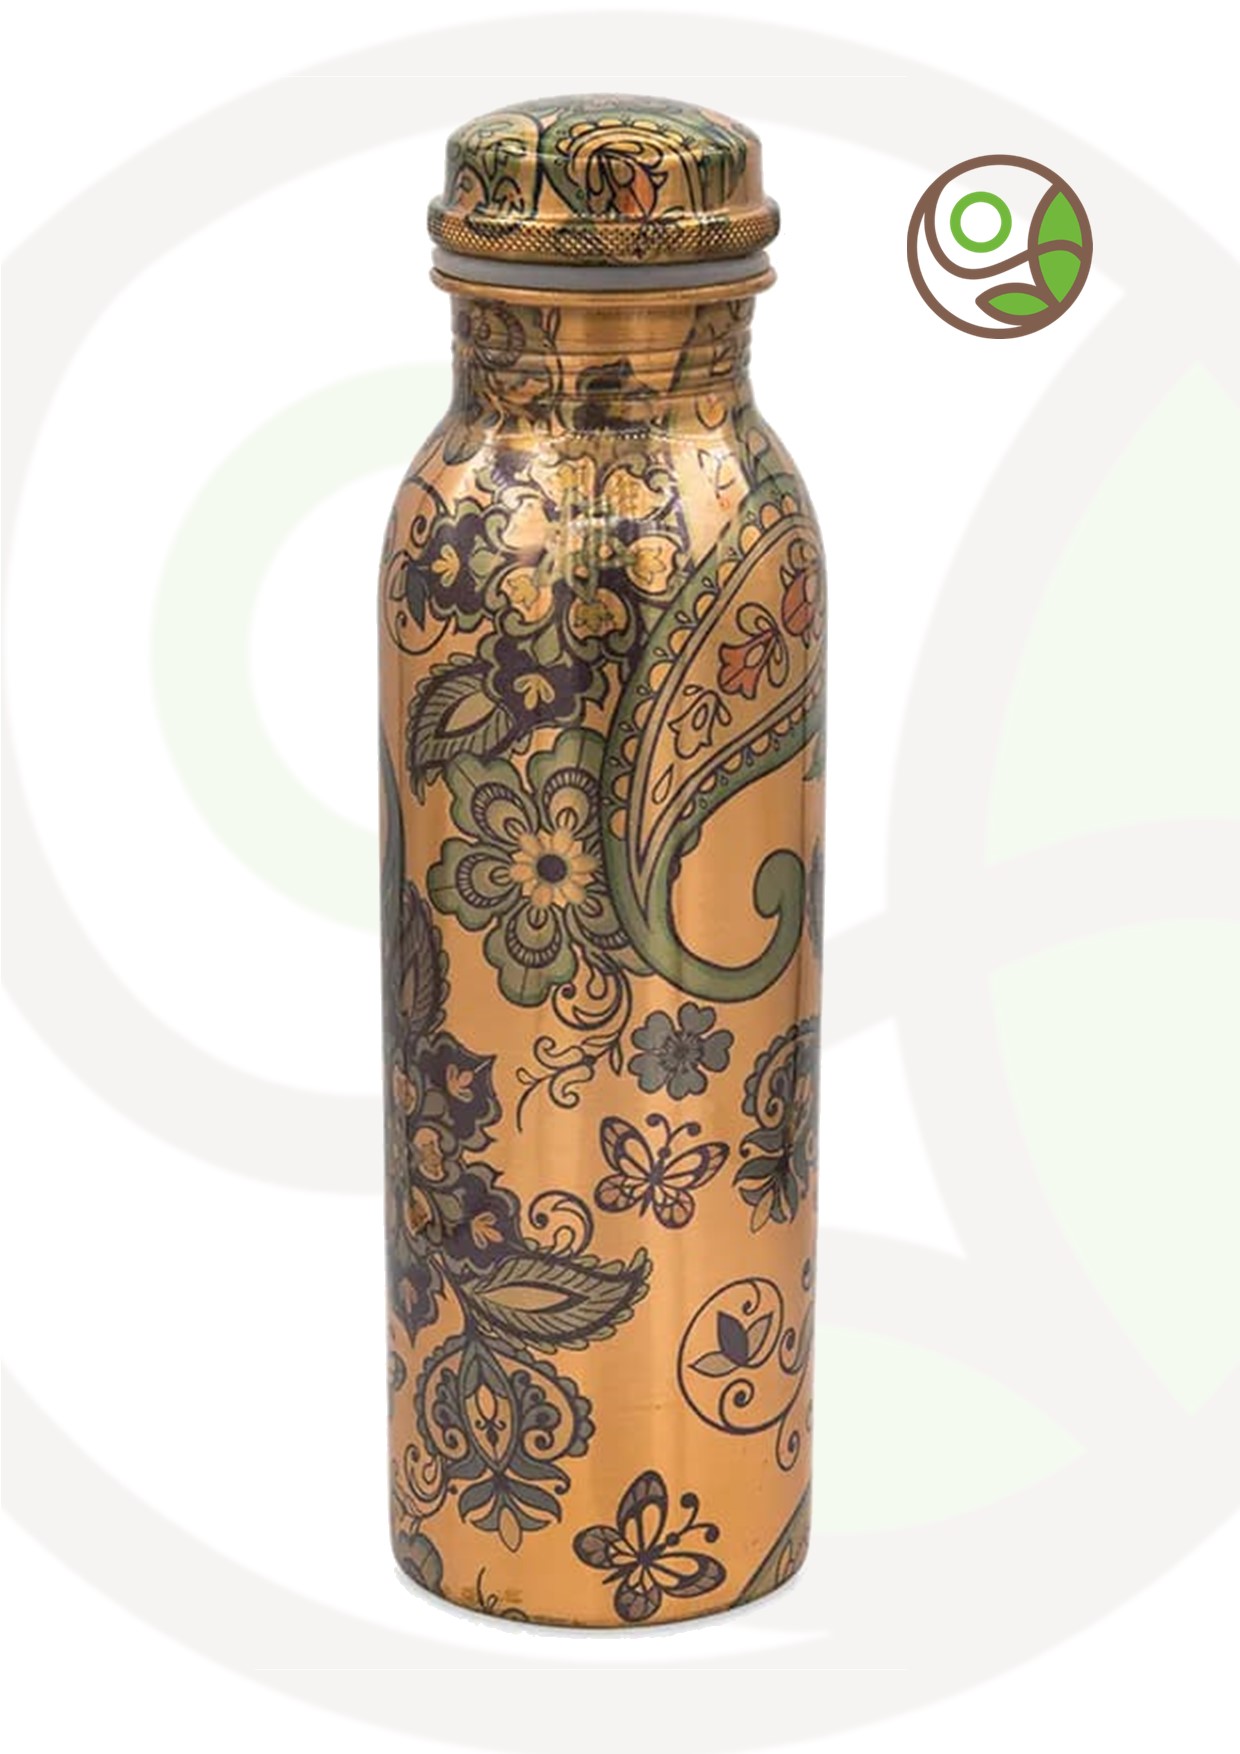 Featured image for “Bottiglia in rame con disegno kashmir stampato”